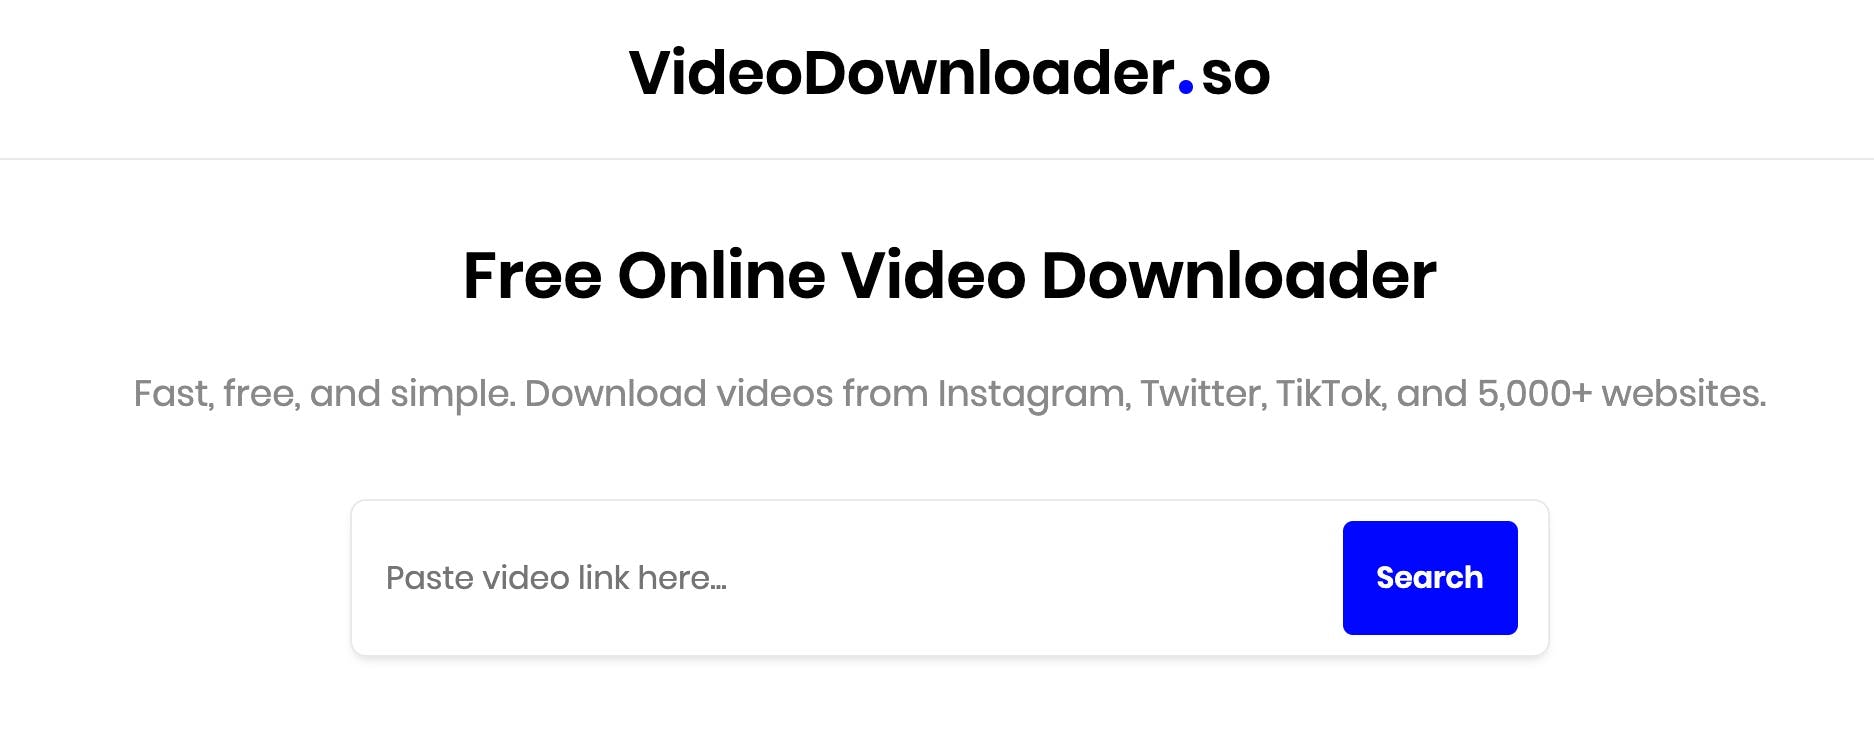 videodownloader.so homepage